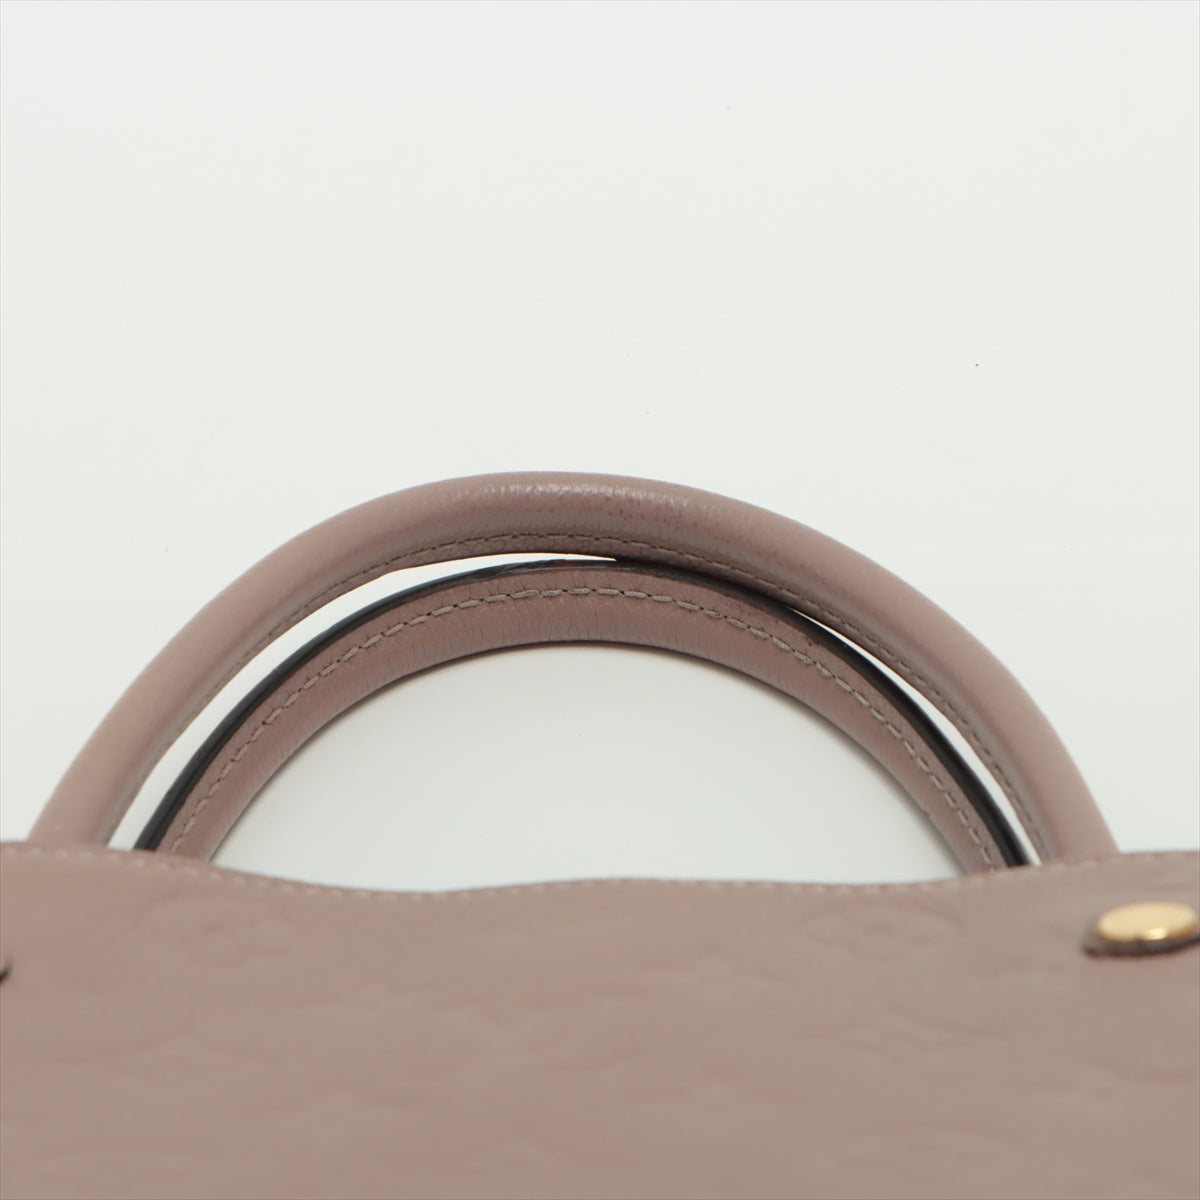 Louis Vuitton Beige Monogram Empreinte Leather Montaigne MM